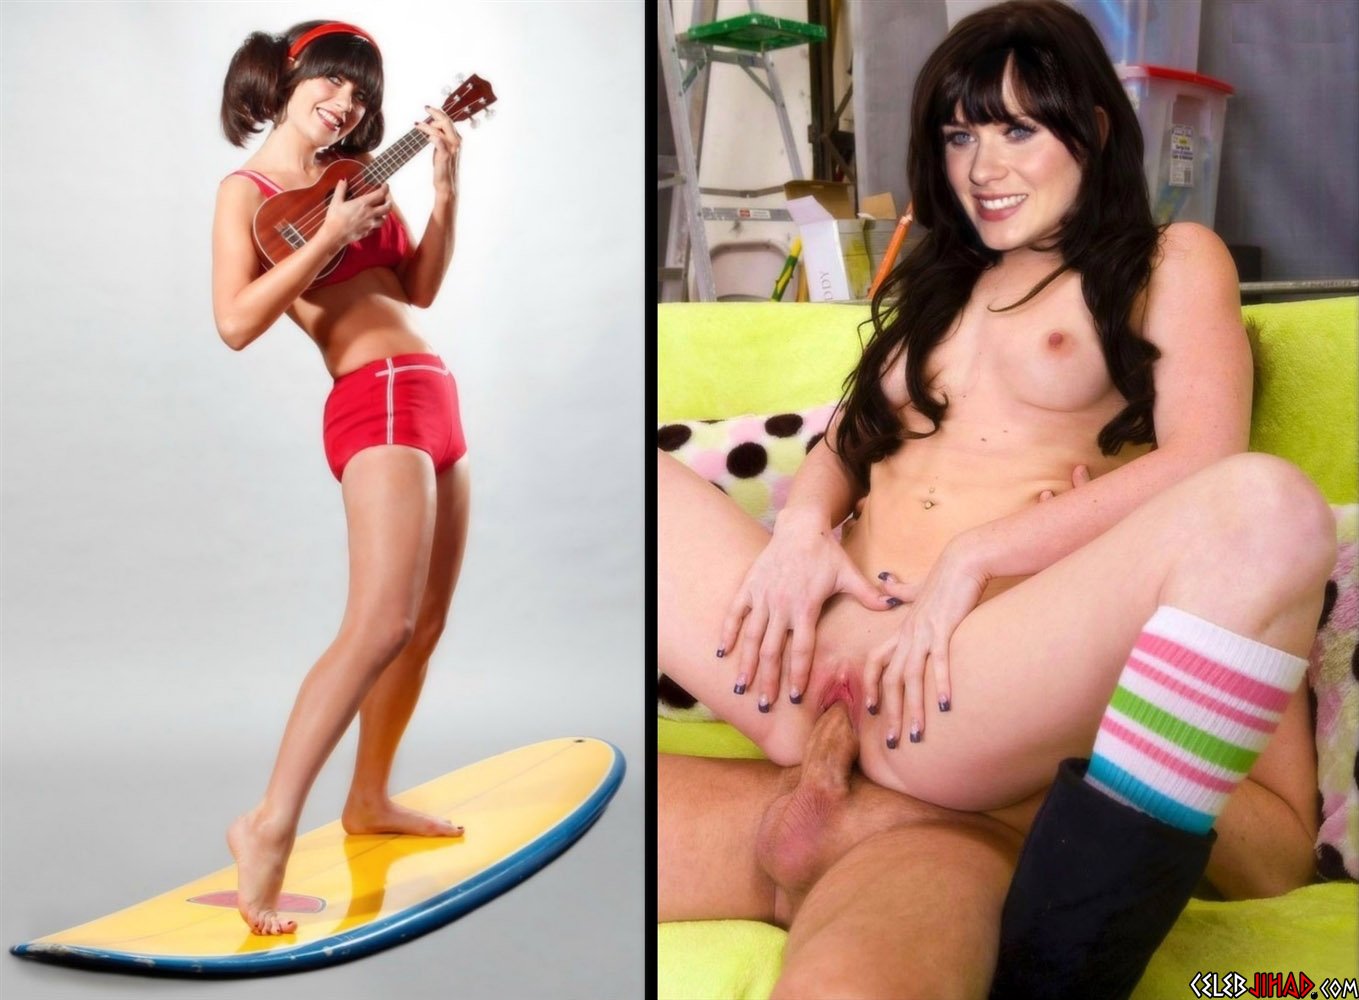 Zooey Deschanel Nude "Cute Mode Slut Mode" Photos.